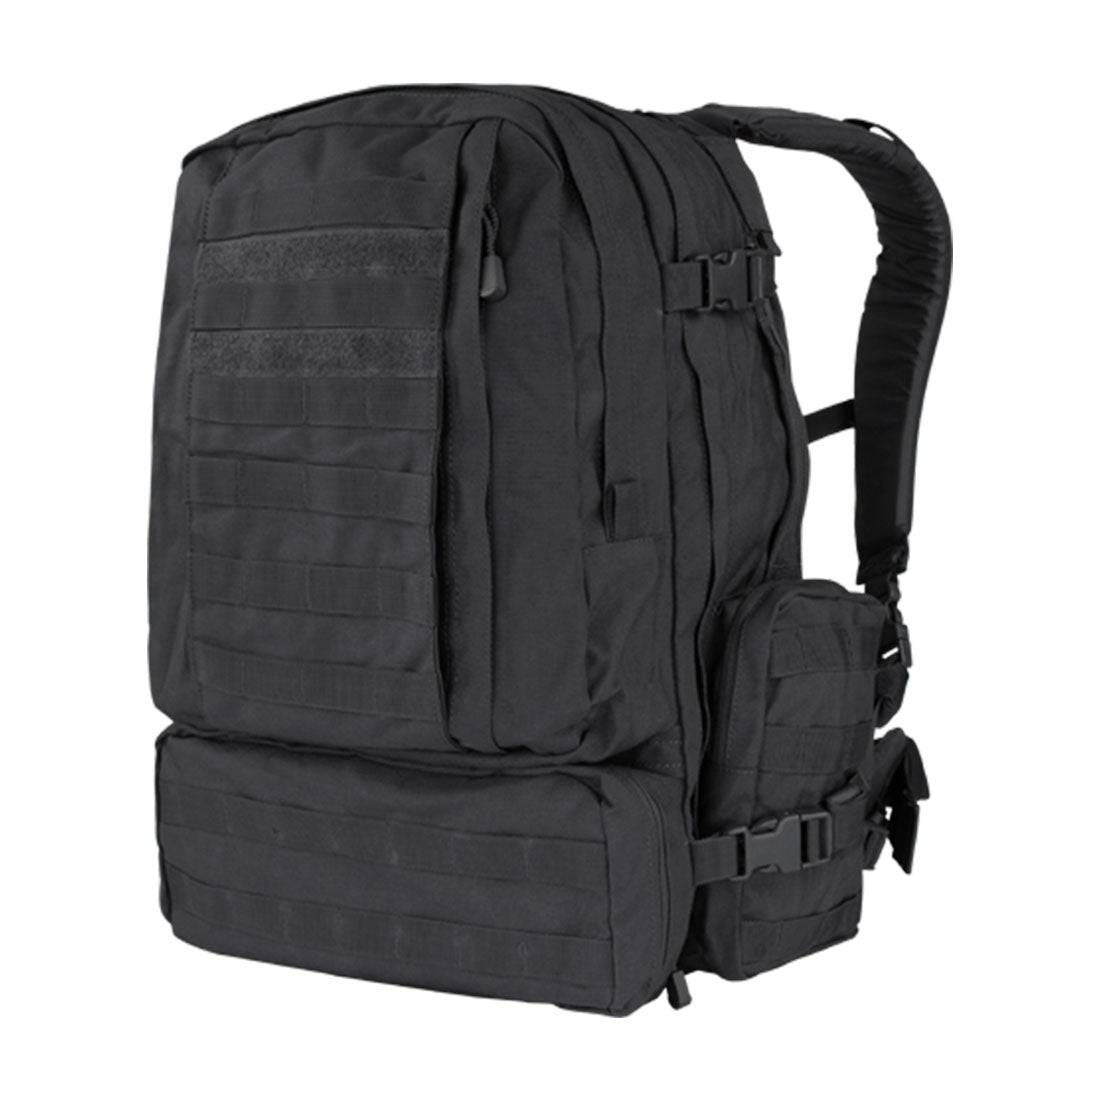 Condor 3 Day Assault Bag – Security Pro USA